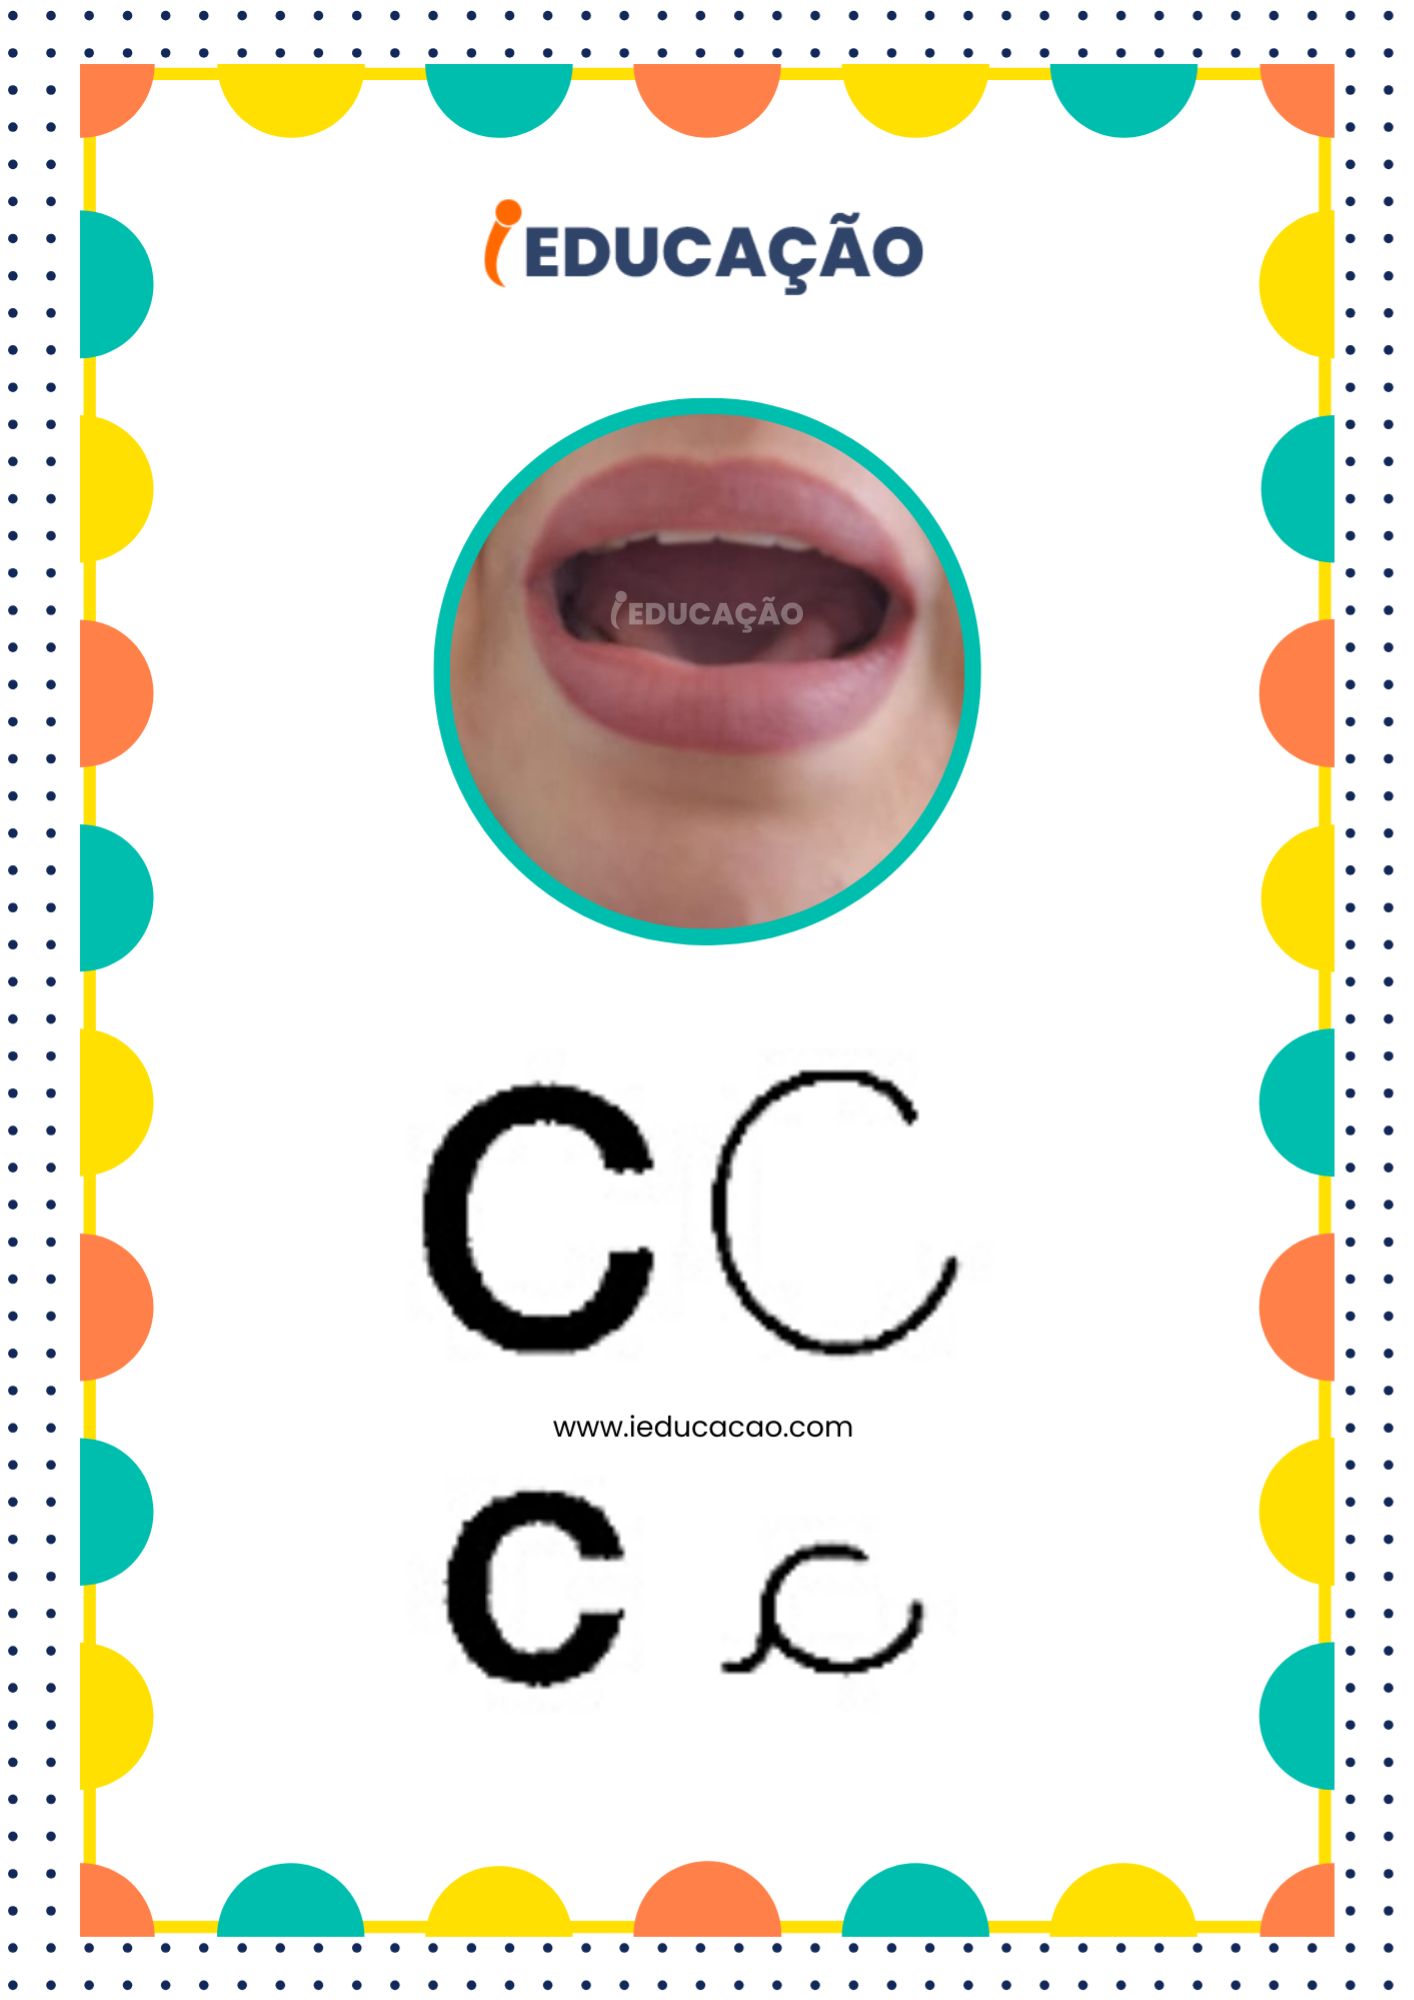 Letra C - Alfabeto Fônico com as letras do alfabeto - Consciência Fonológica